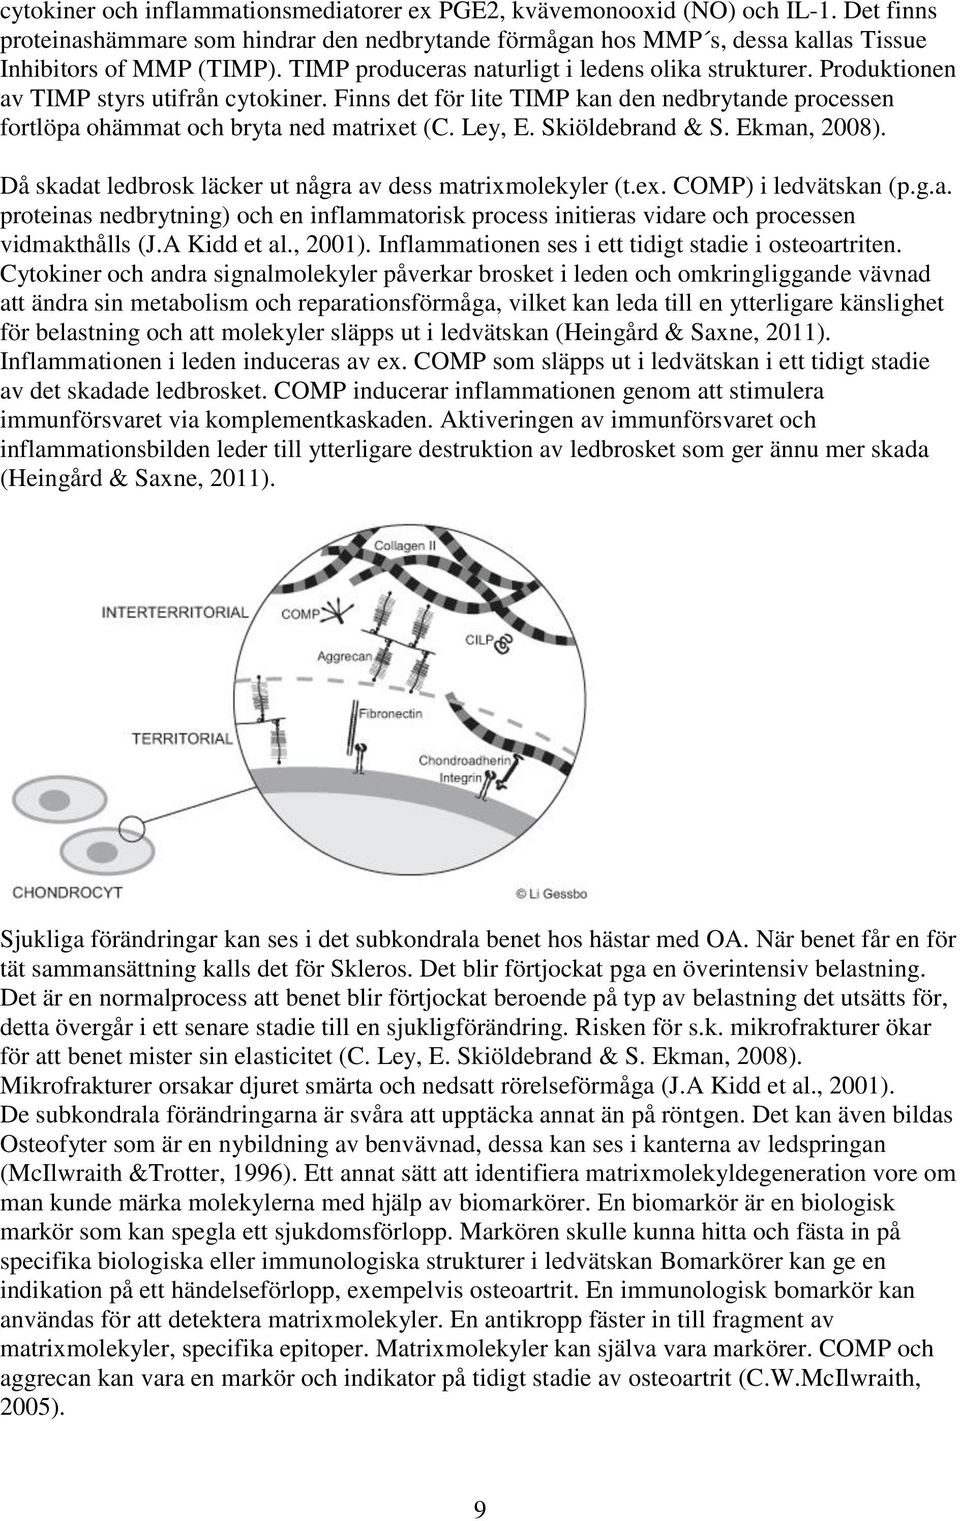 Ley, E. Skiöldebrand & S. Ekman, 2008). Då skadat ledbrosk läcker ut några av dess matrixmolekyler (t.ex. COMP) i ledvätskan (p.g.a. proteinas nedbrytning) och en inflammatorisk process initieras vidare och processen vidmakthålls (J.